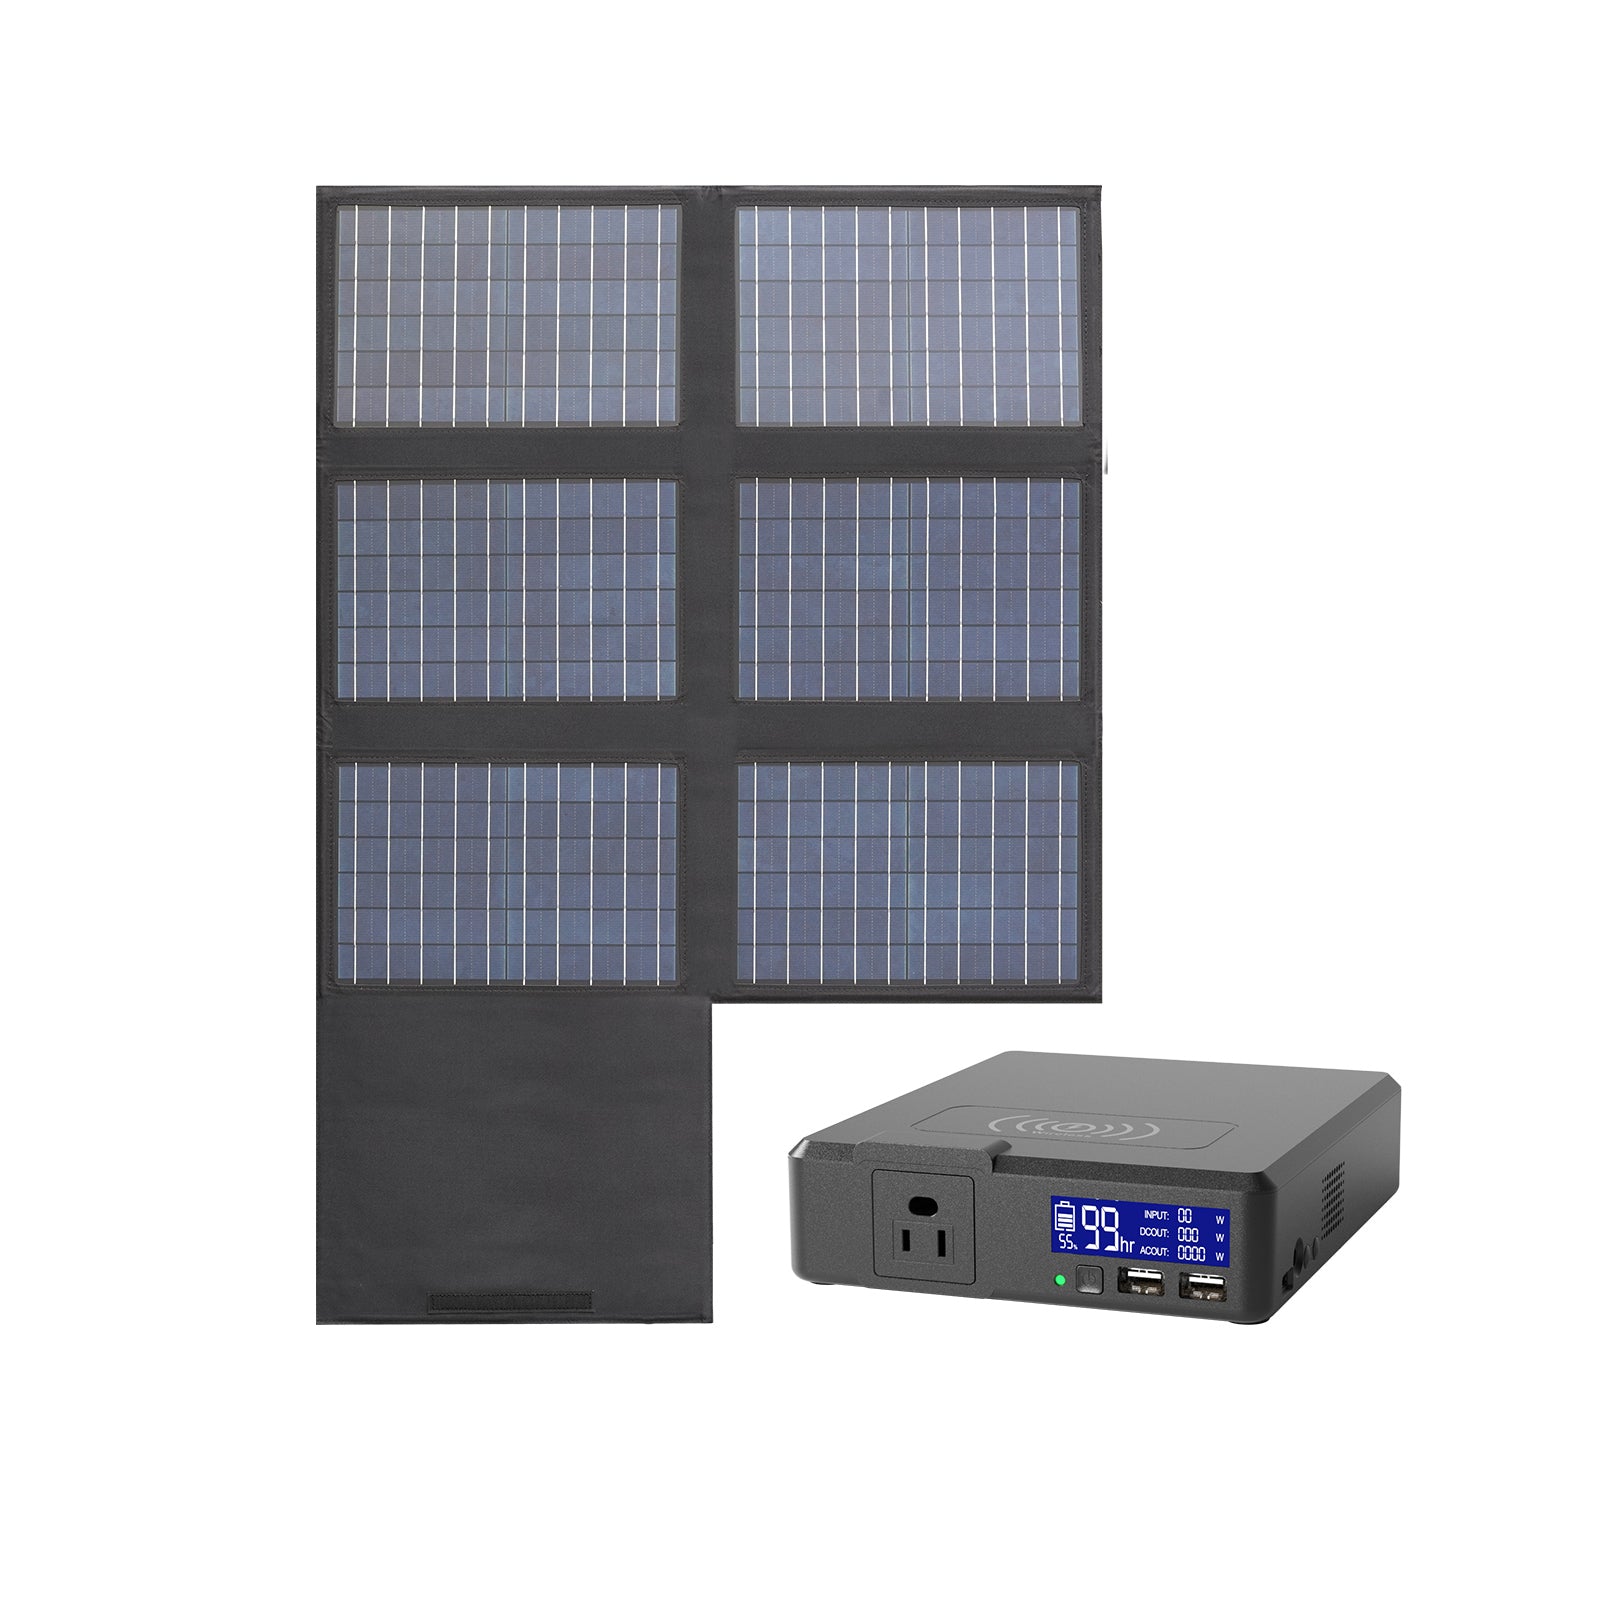 Panneau solaire pliable - panneau solaire portable 60W avec USB 5V